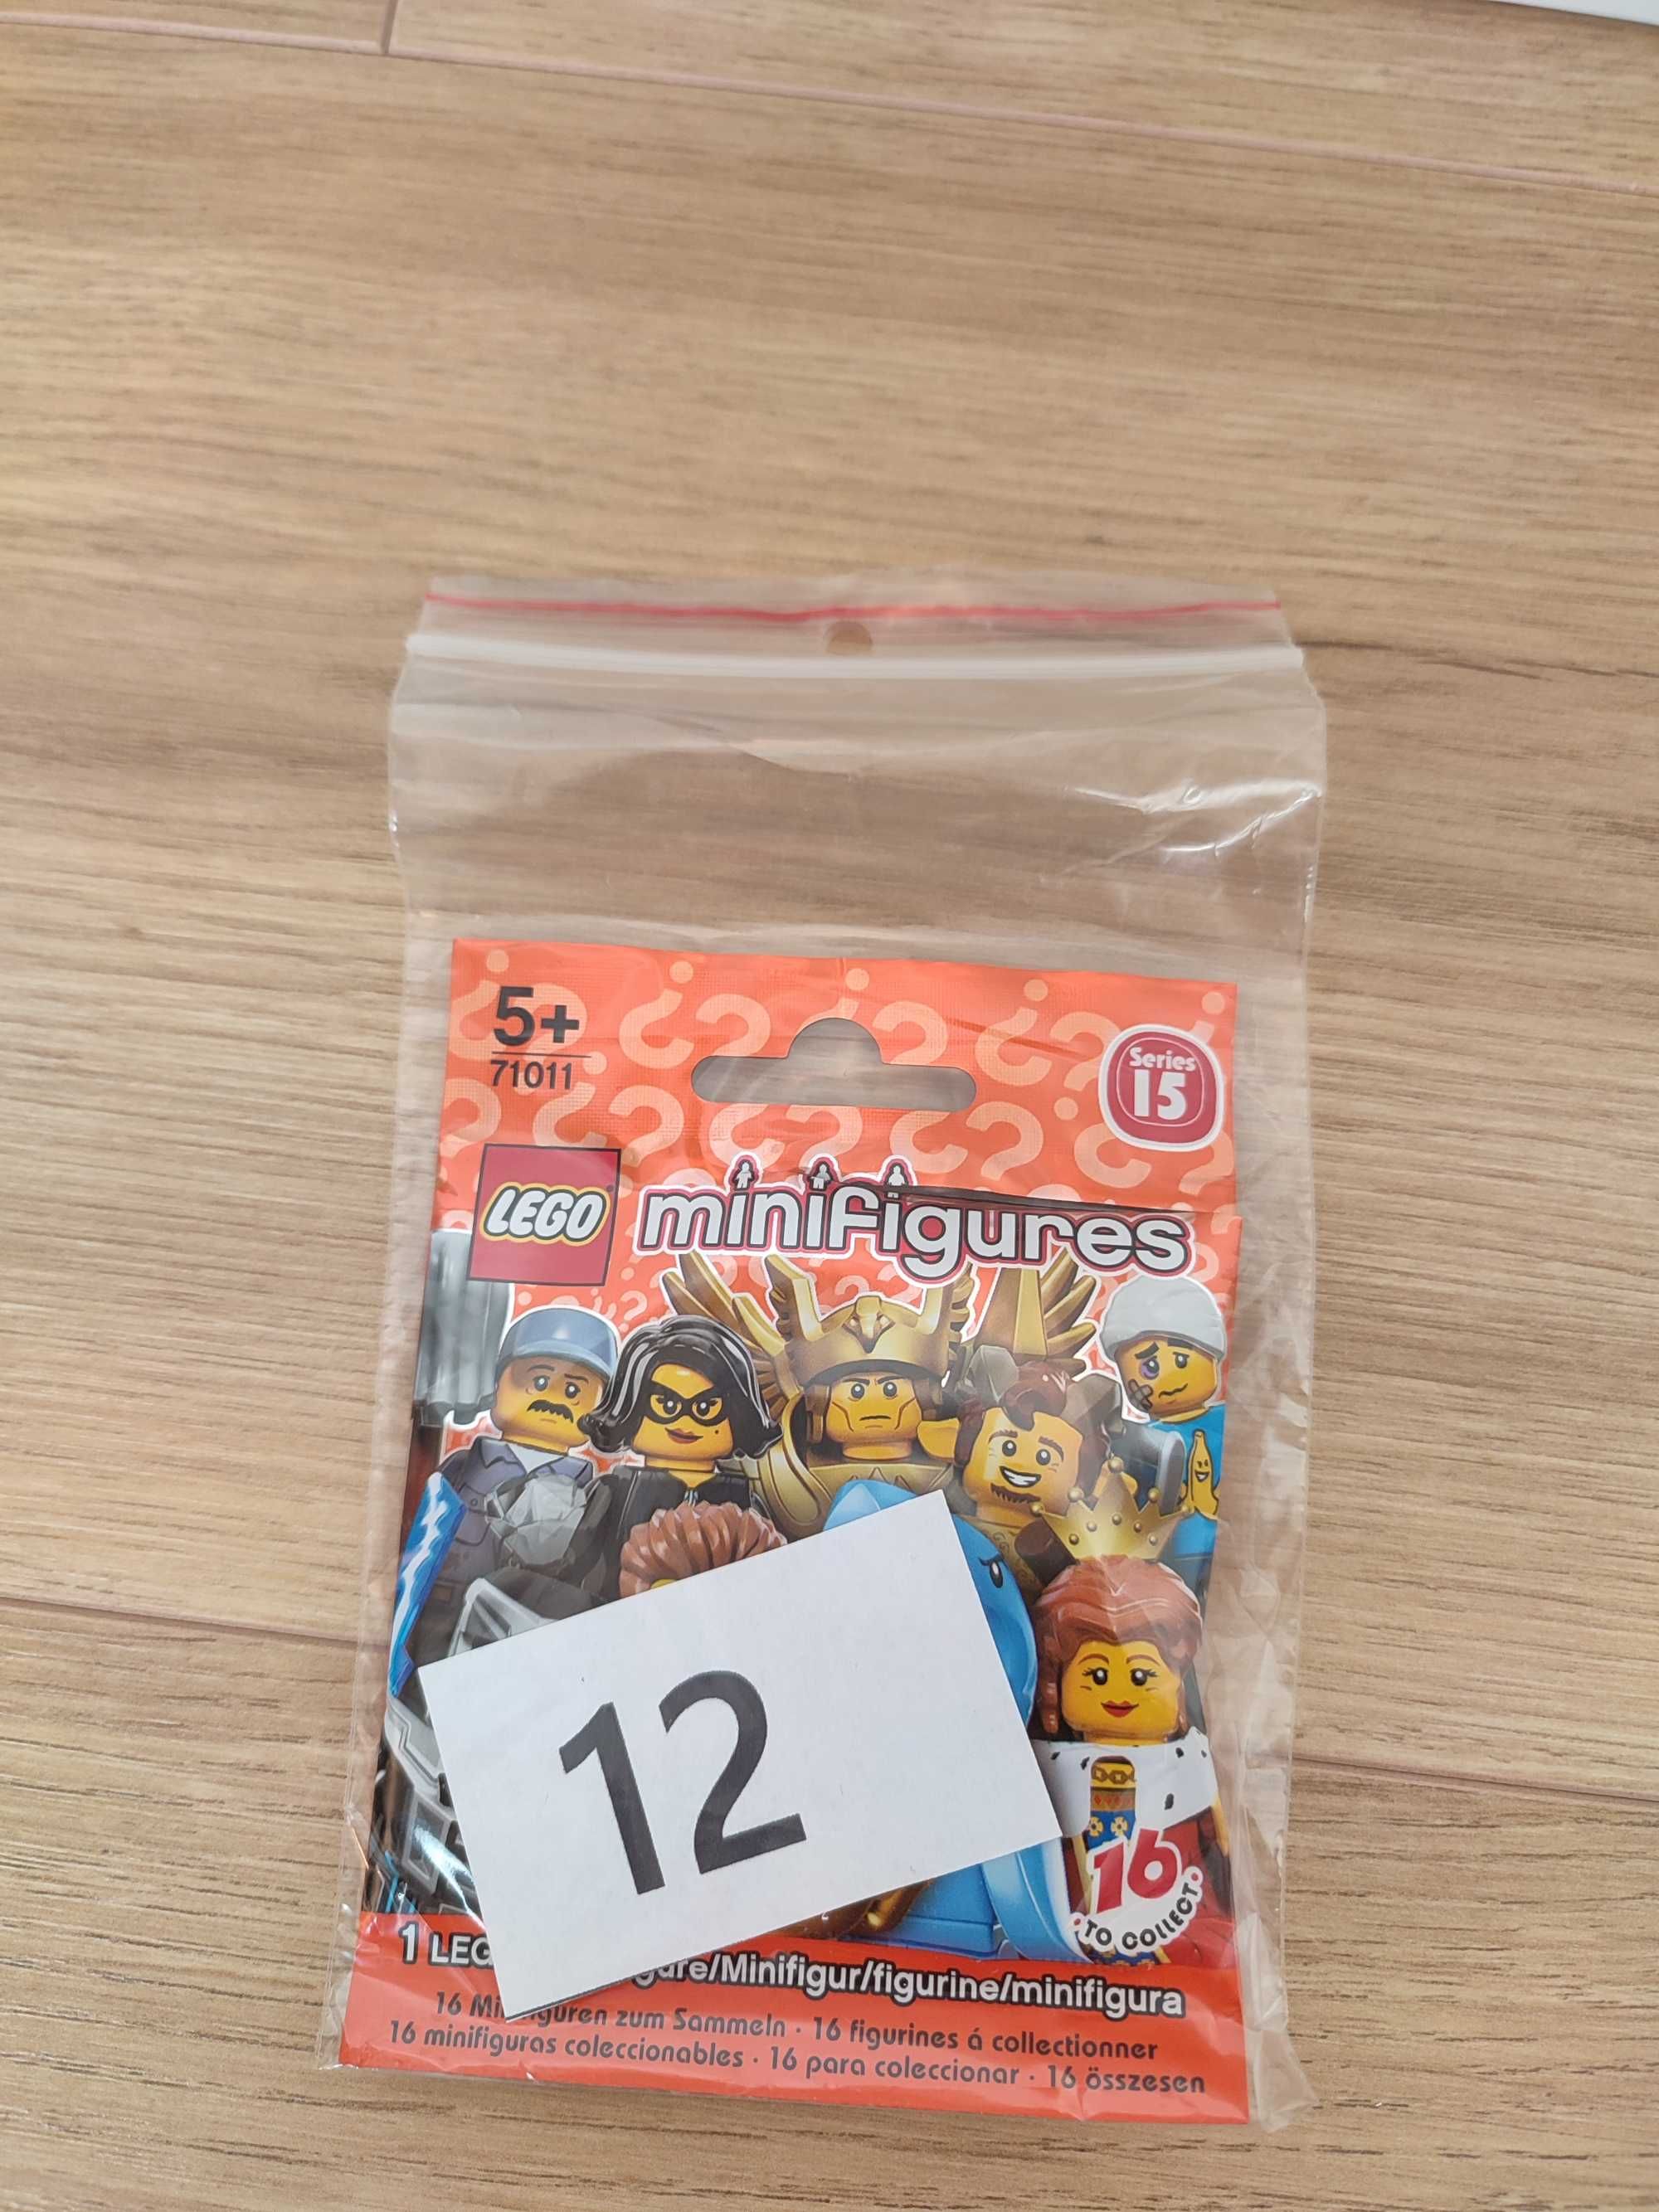 Lego minifigures - 15 seria - Zawodnik Kendo